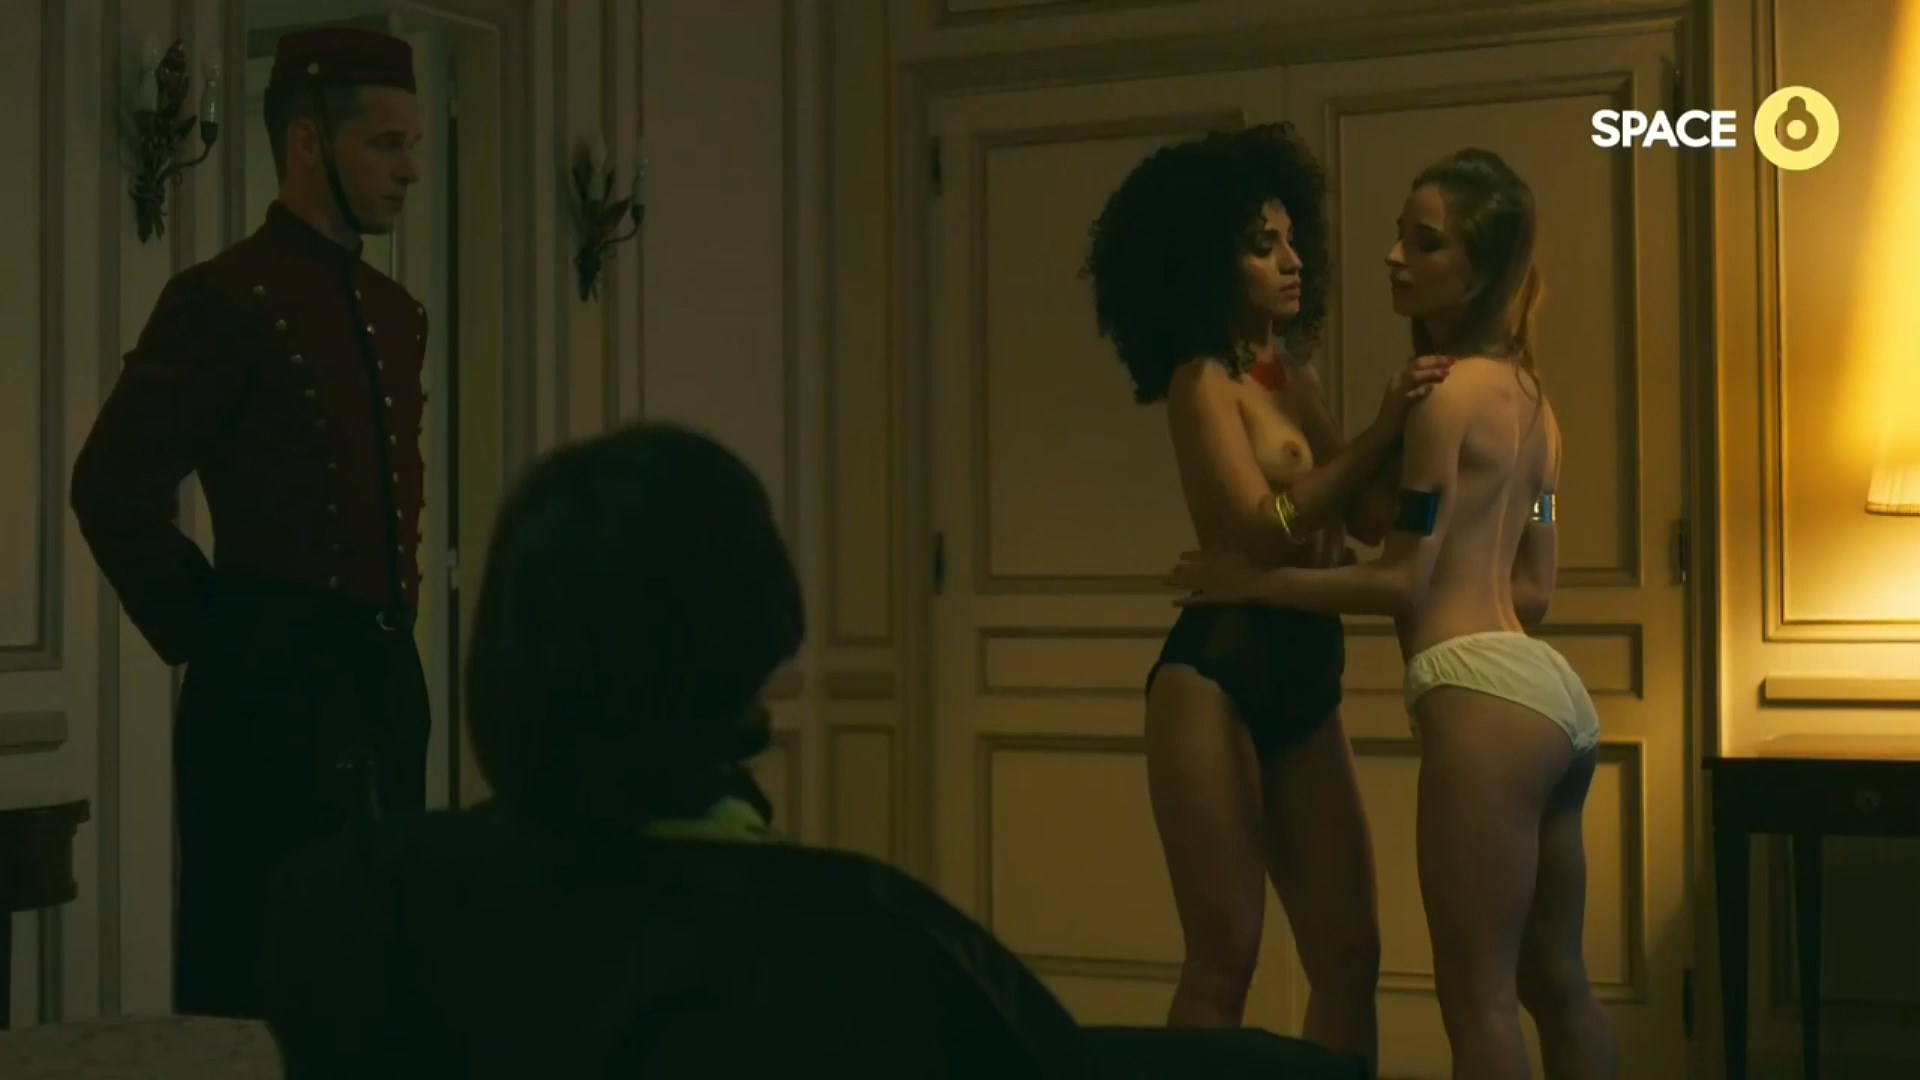 Nude Video Celebs Nathalie Llanos Nude Monzon S01e06